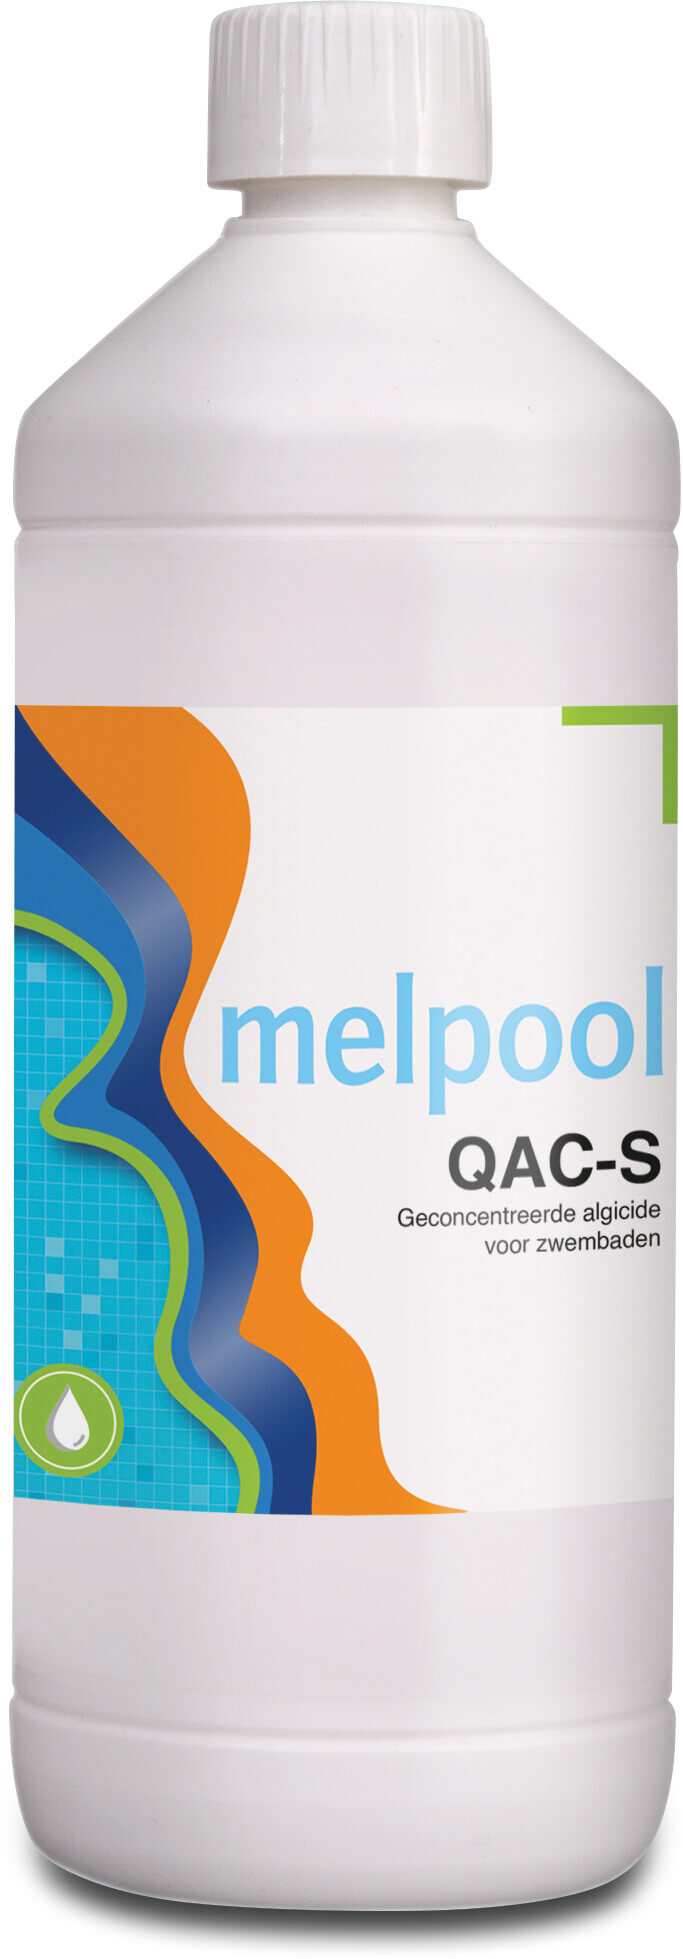 Melpool QAC-S flydende algemiddel stærkt koncentreret 1L